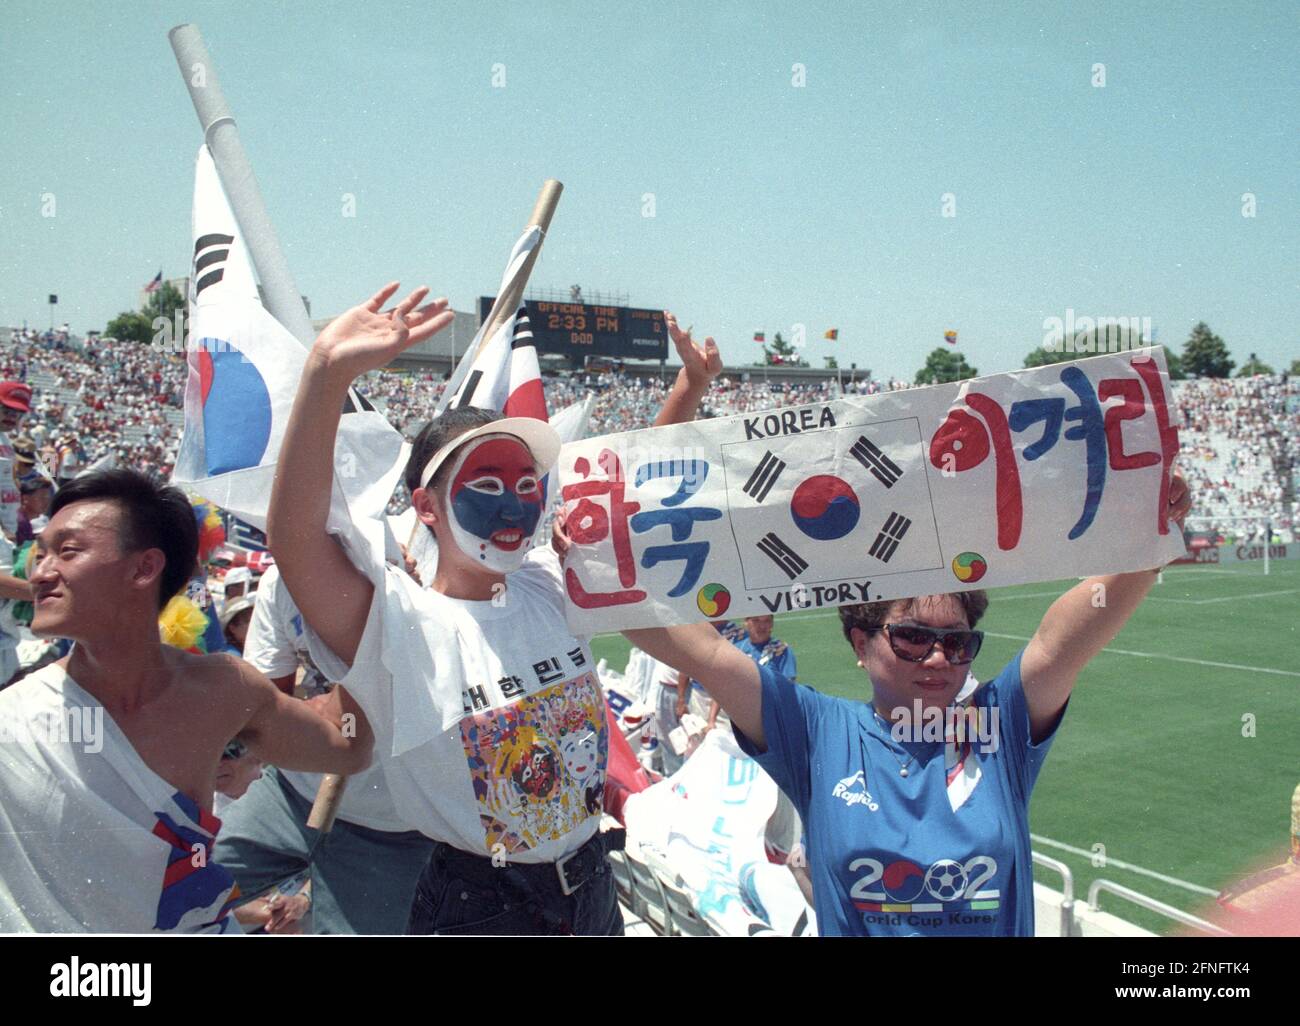 Coupe du monde 94 Allemagne - Corée du Sud 3:2/27.06.1994 à Dallas. Fans coréens dans le stade de Dallas. [traduction automatique] Banque D'Images